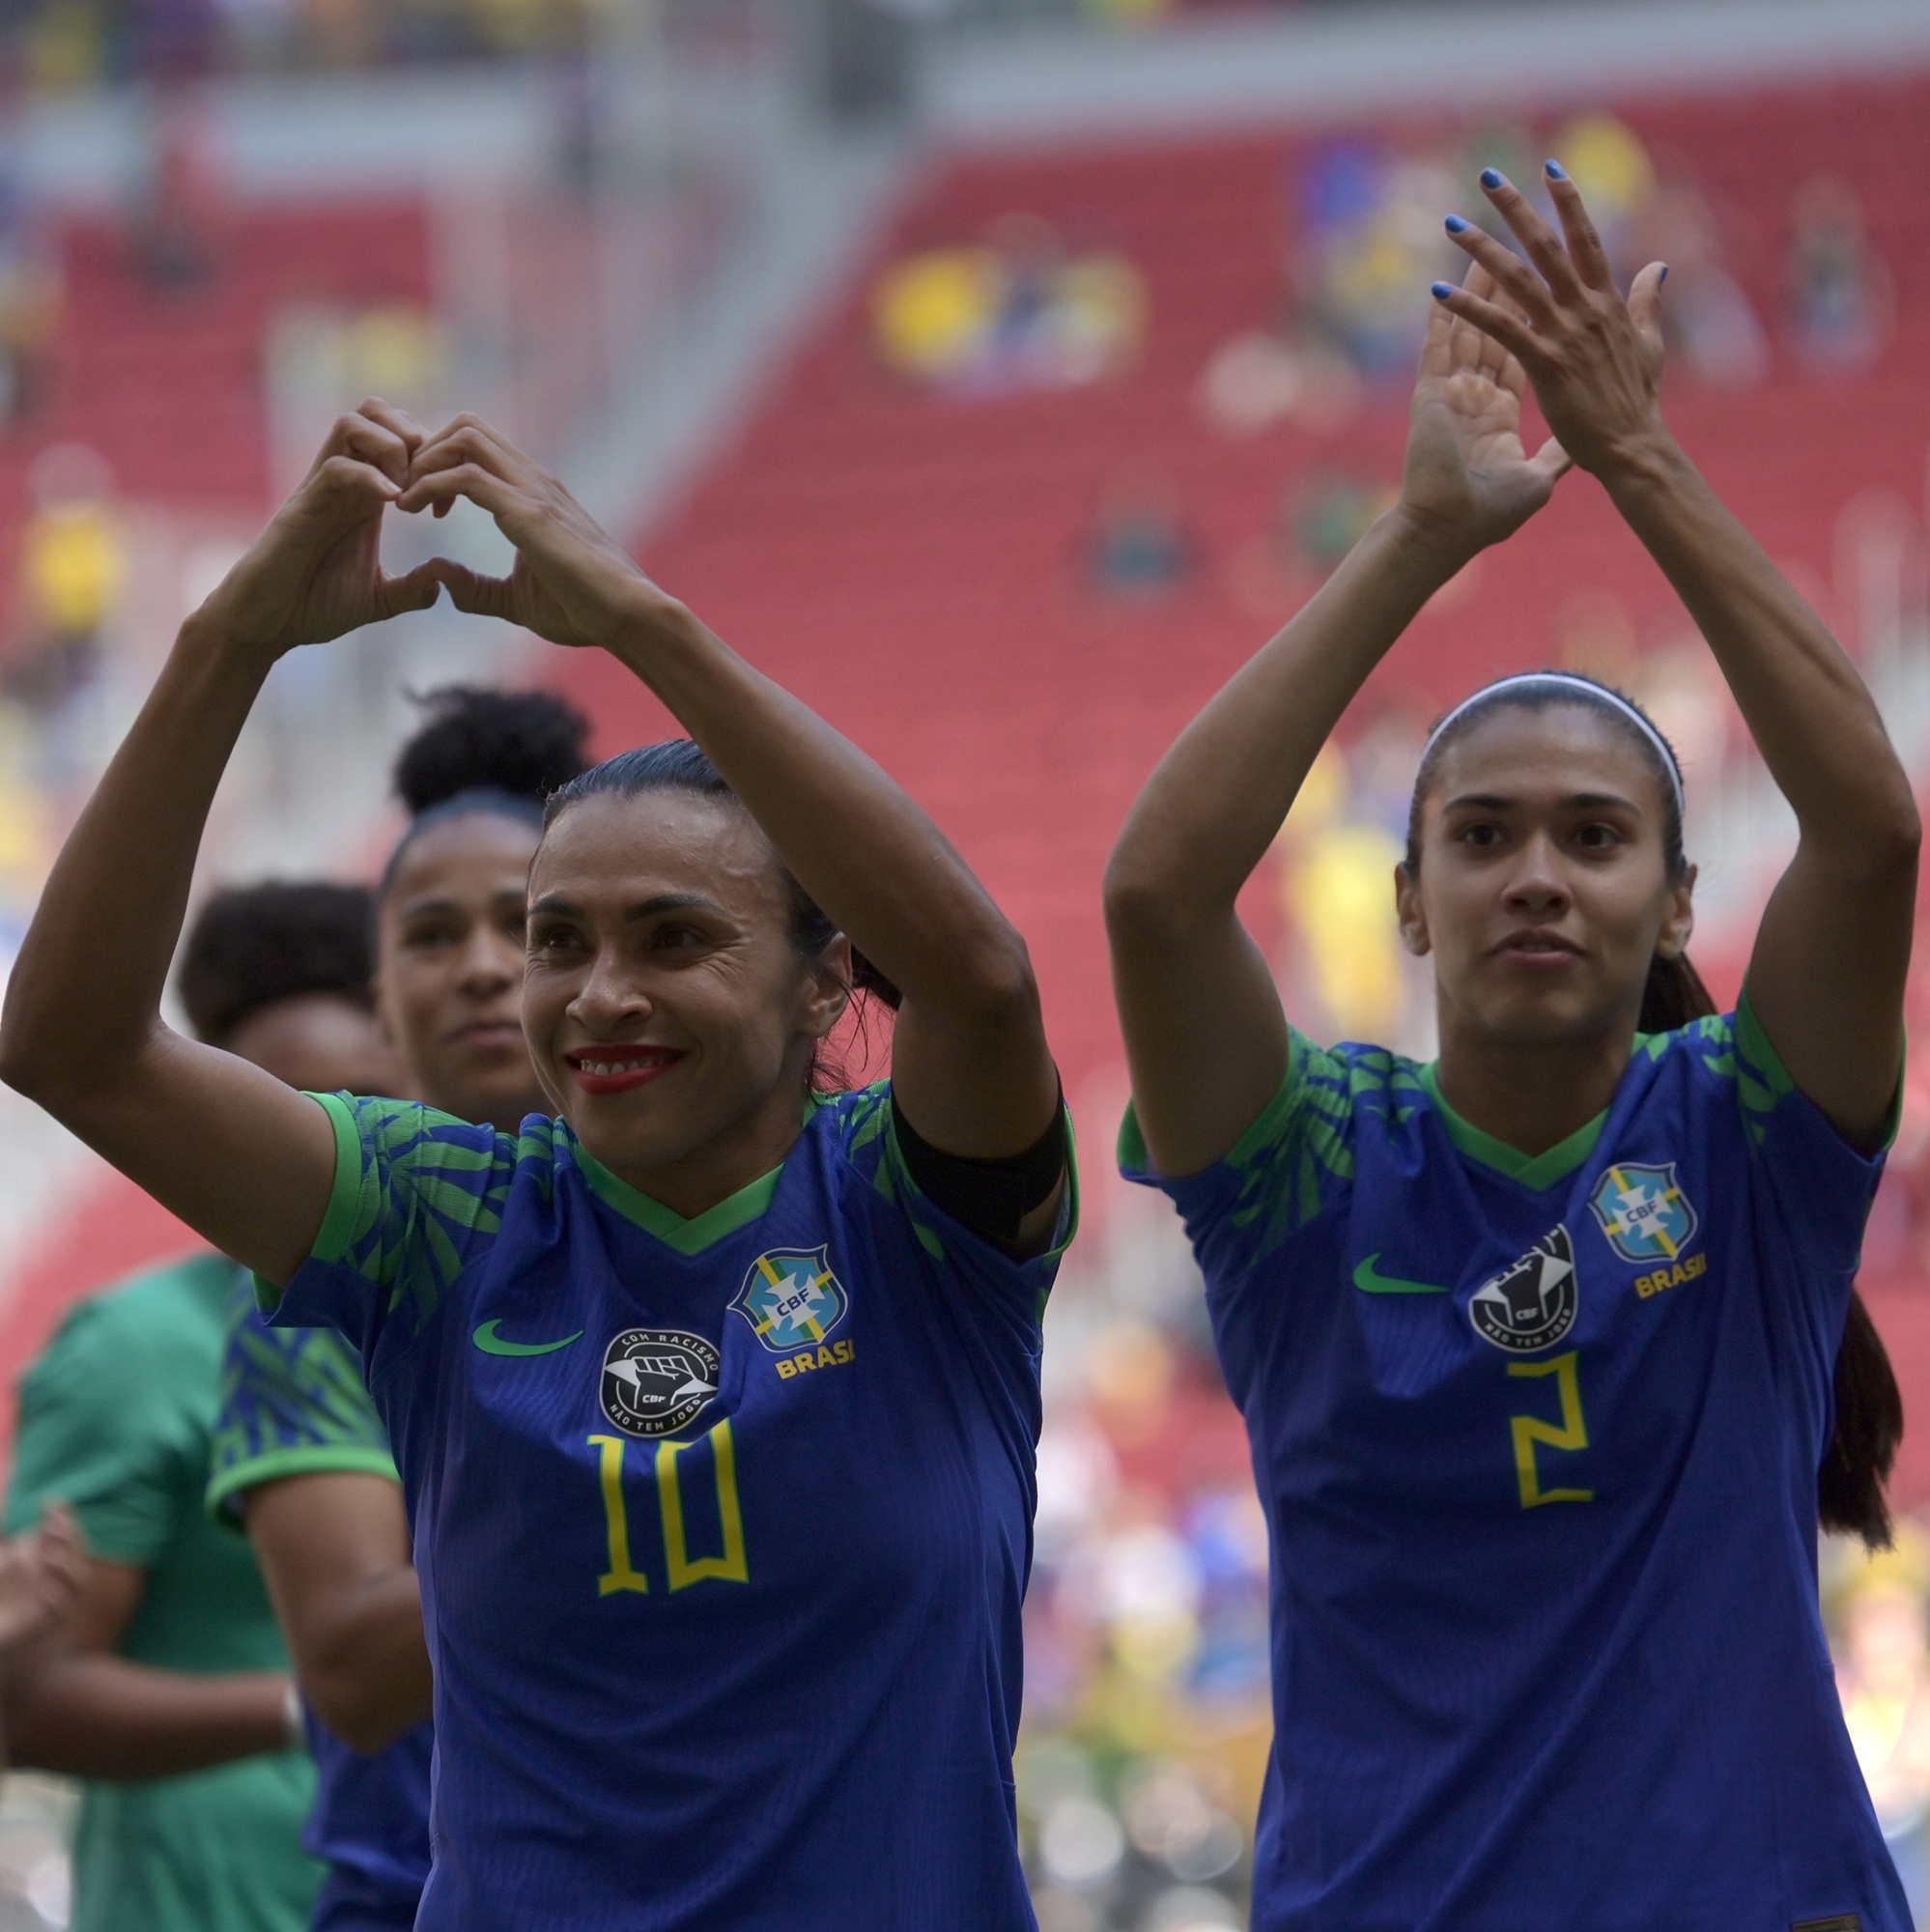 Onde assistir à Copa do Mundo Feminina? Entenda divisão dos direitos